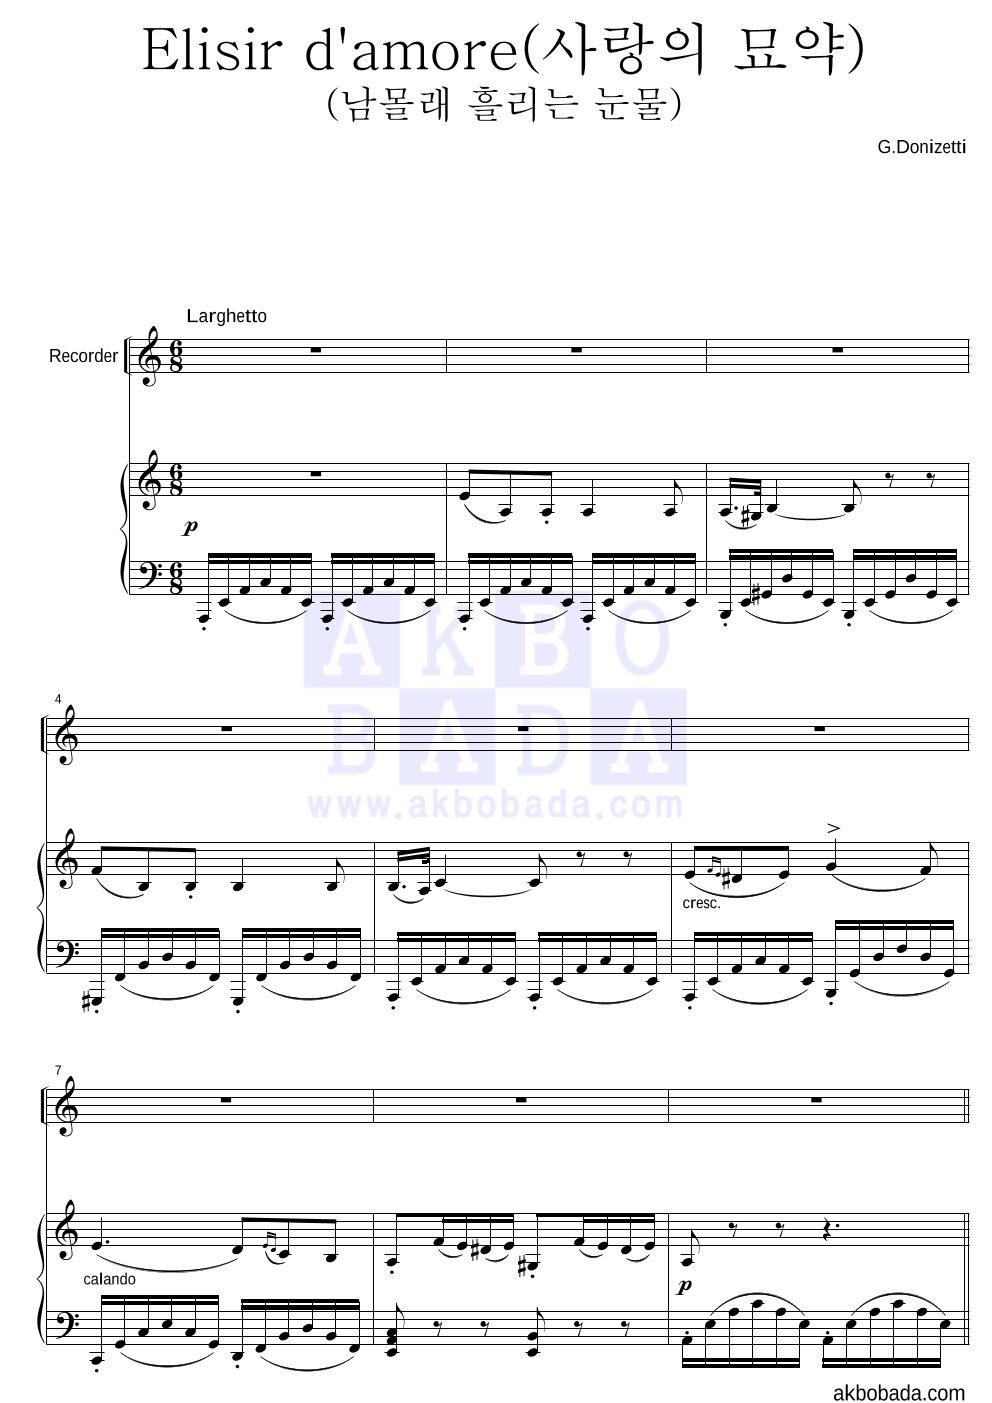 도니제티 - Elisir d'amore(사랑의 묘약)(남몰래 흘리는 눈물) 리코더&피아노 악보 